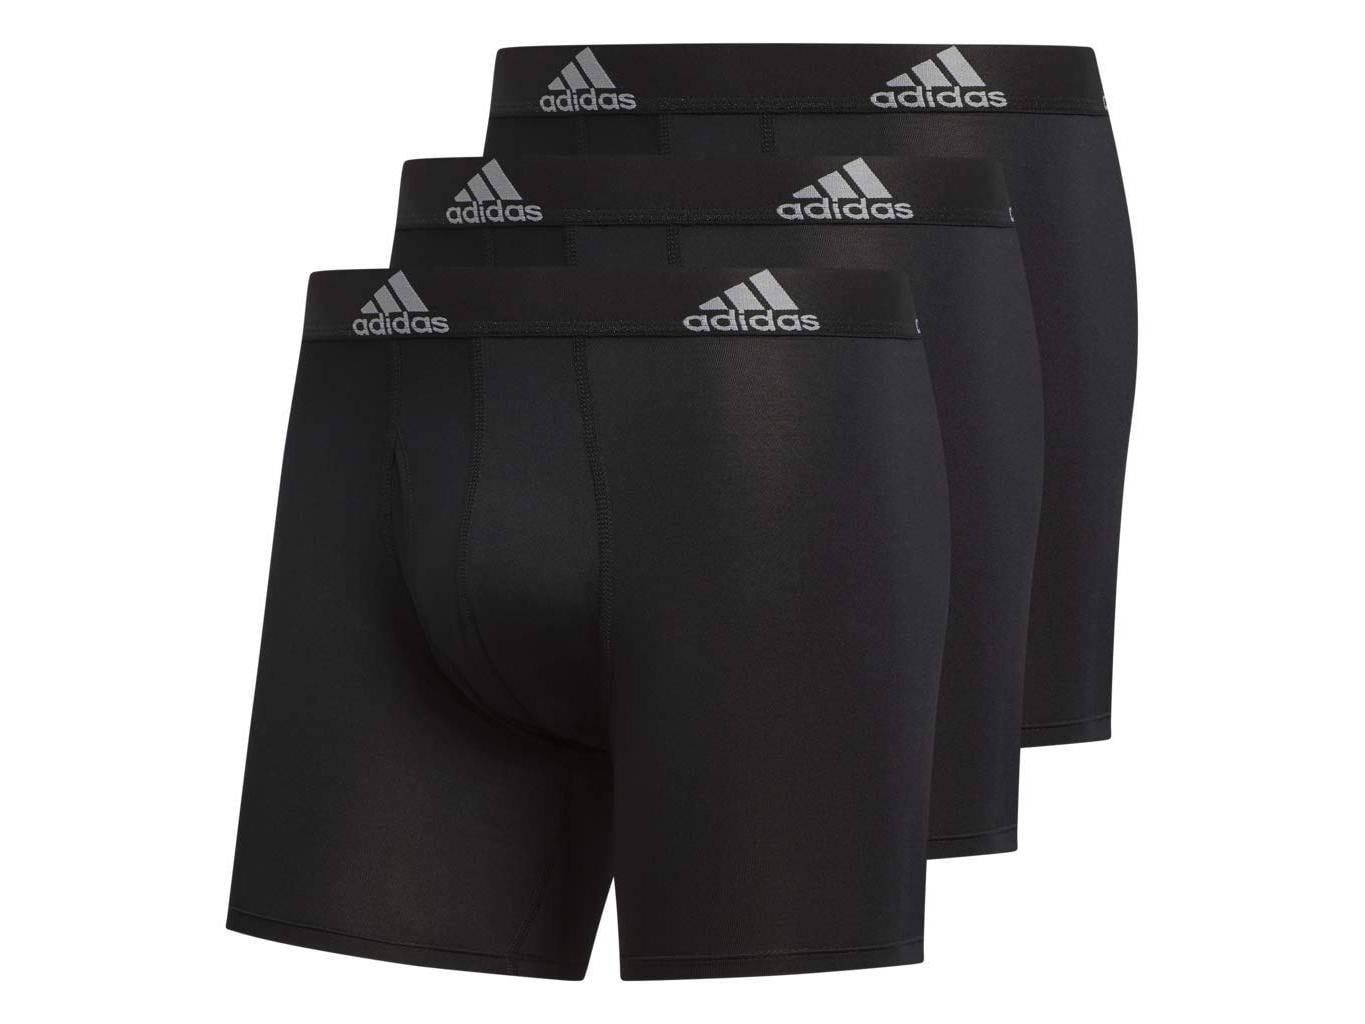 Adidas - adidas Men's Climalite Boxer Briefs Underwear (3-Pack),, Black ...